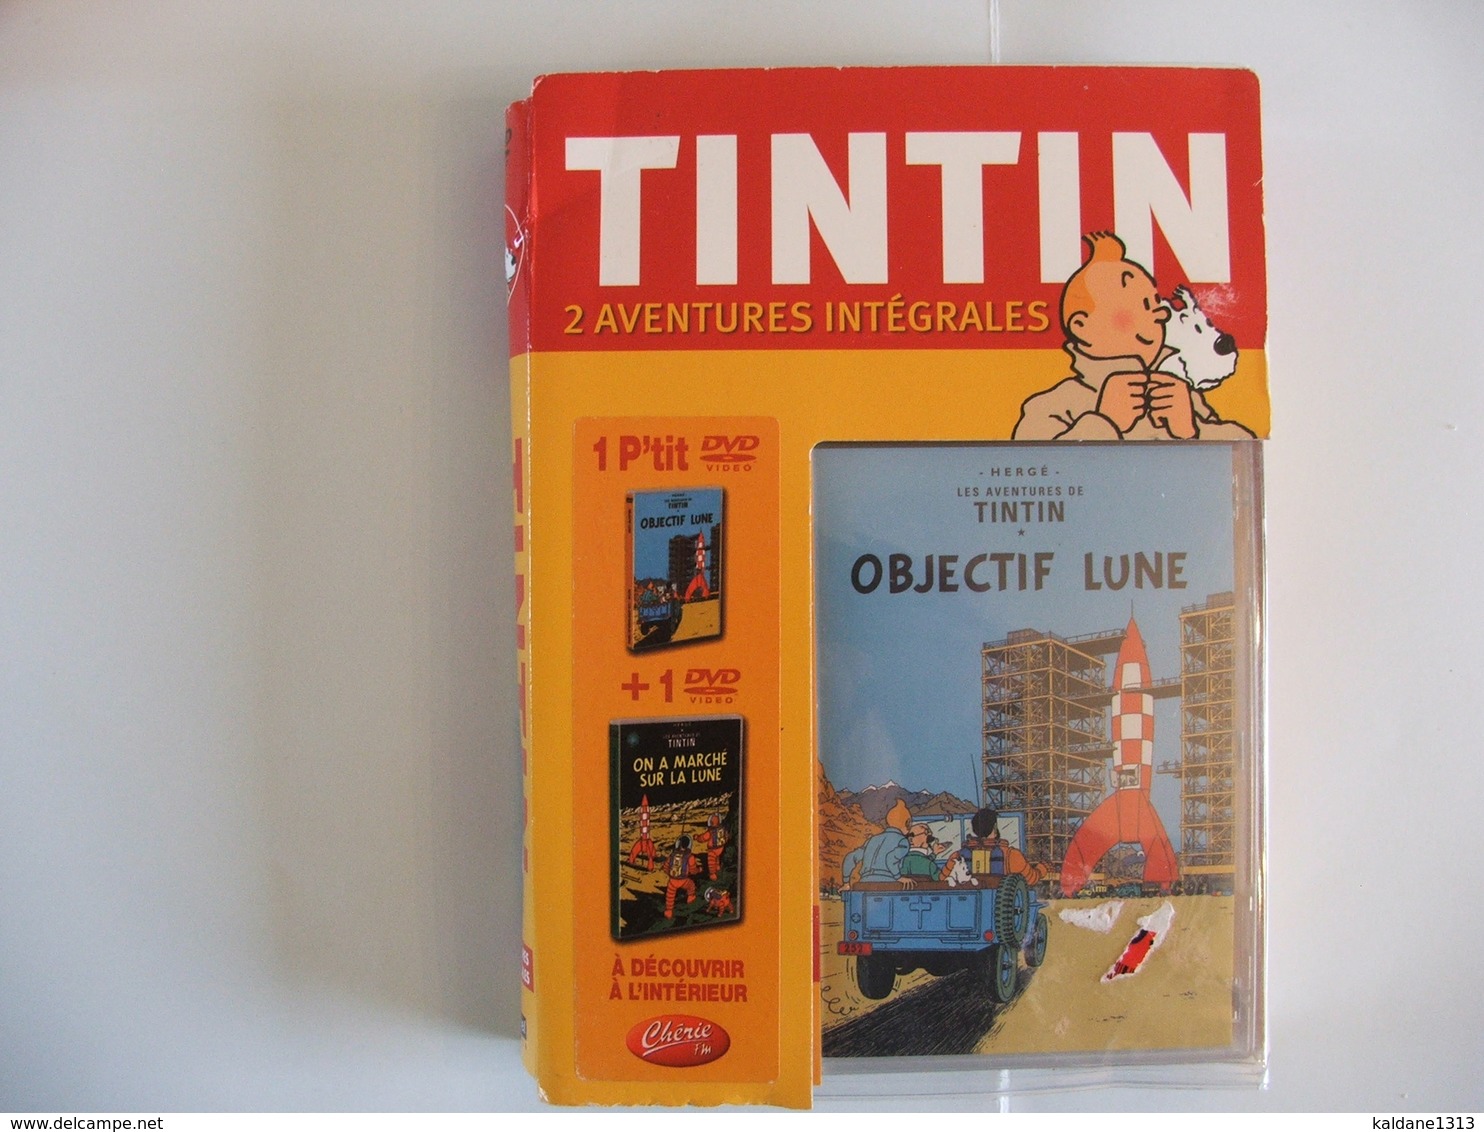 TINTIN Coffret 2 Aventures Intégrales 1 P'tit Dvd Objectif Lune + 1 Dvd On A Marché Sur La Lune Jamais Ouvert - Animation